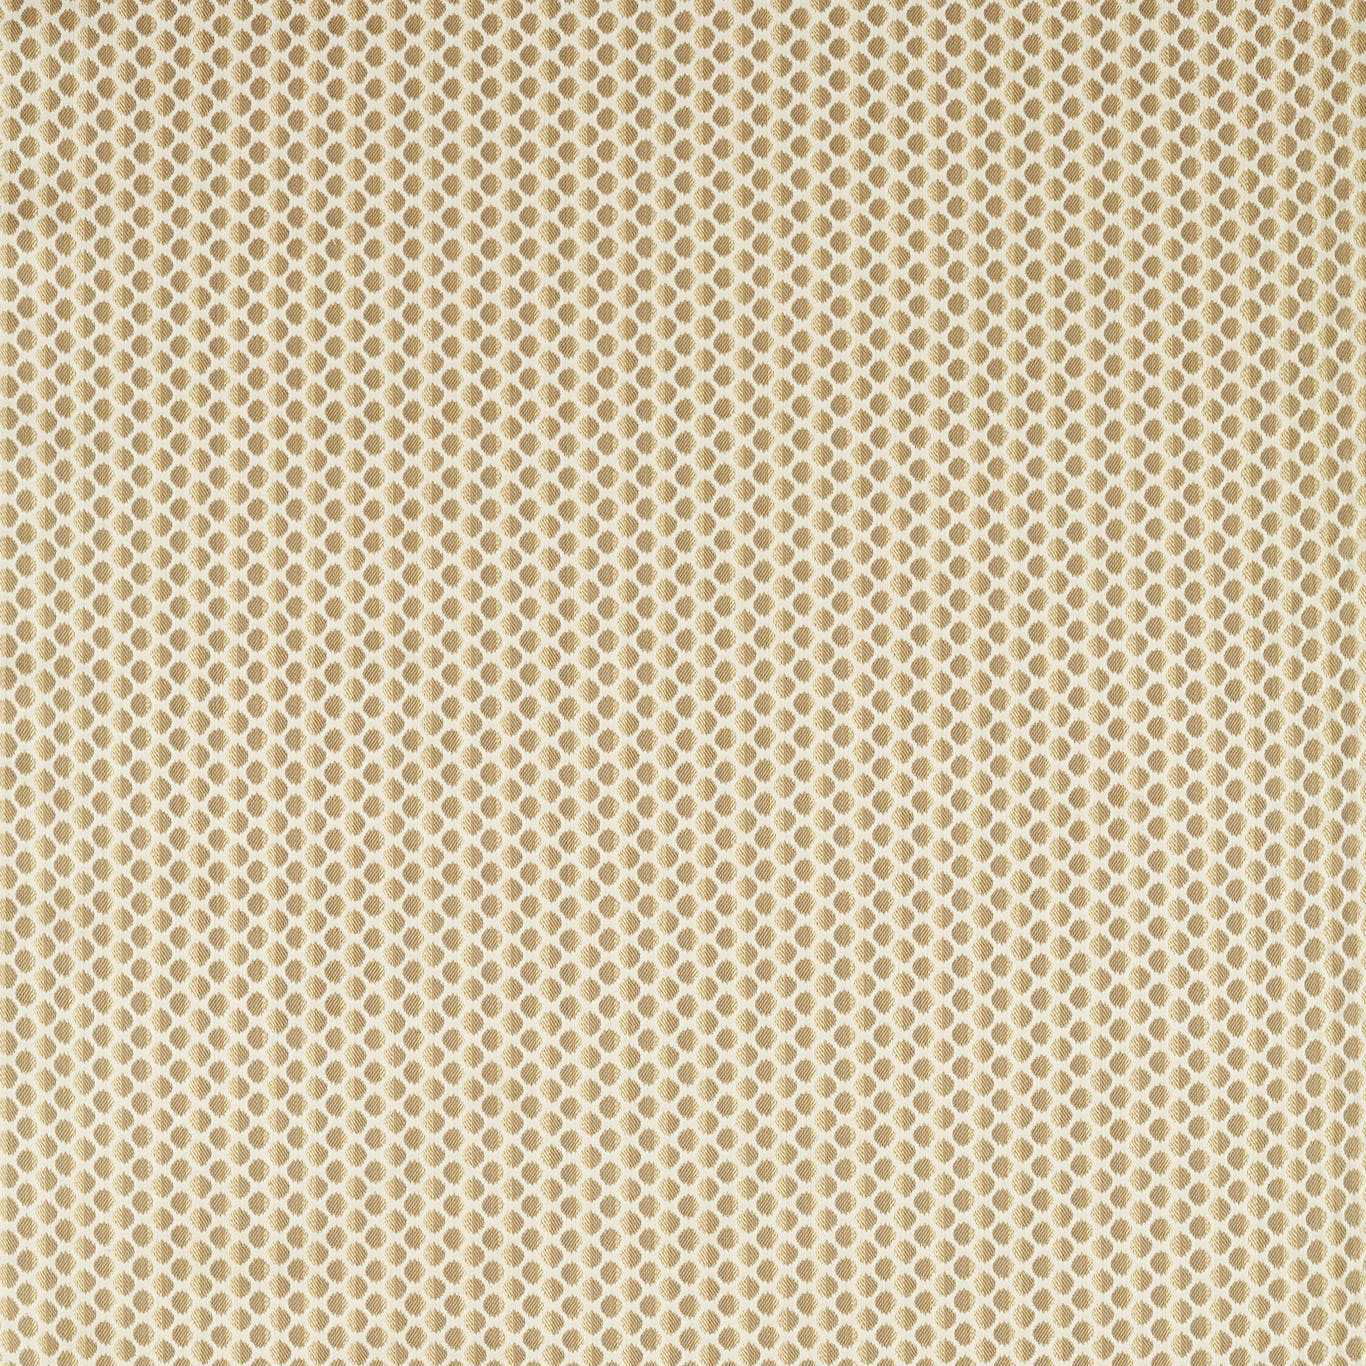 Seymour Spot Gold Fabric by ZOF